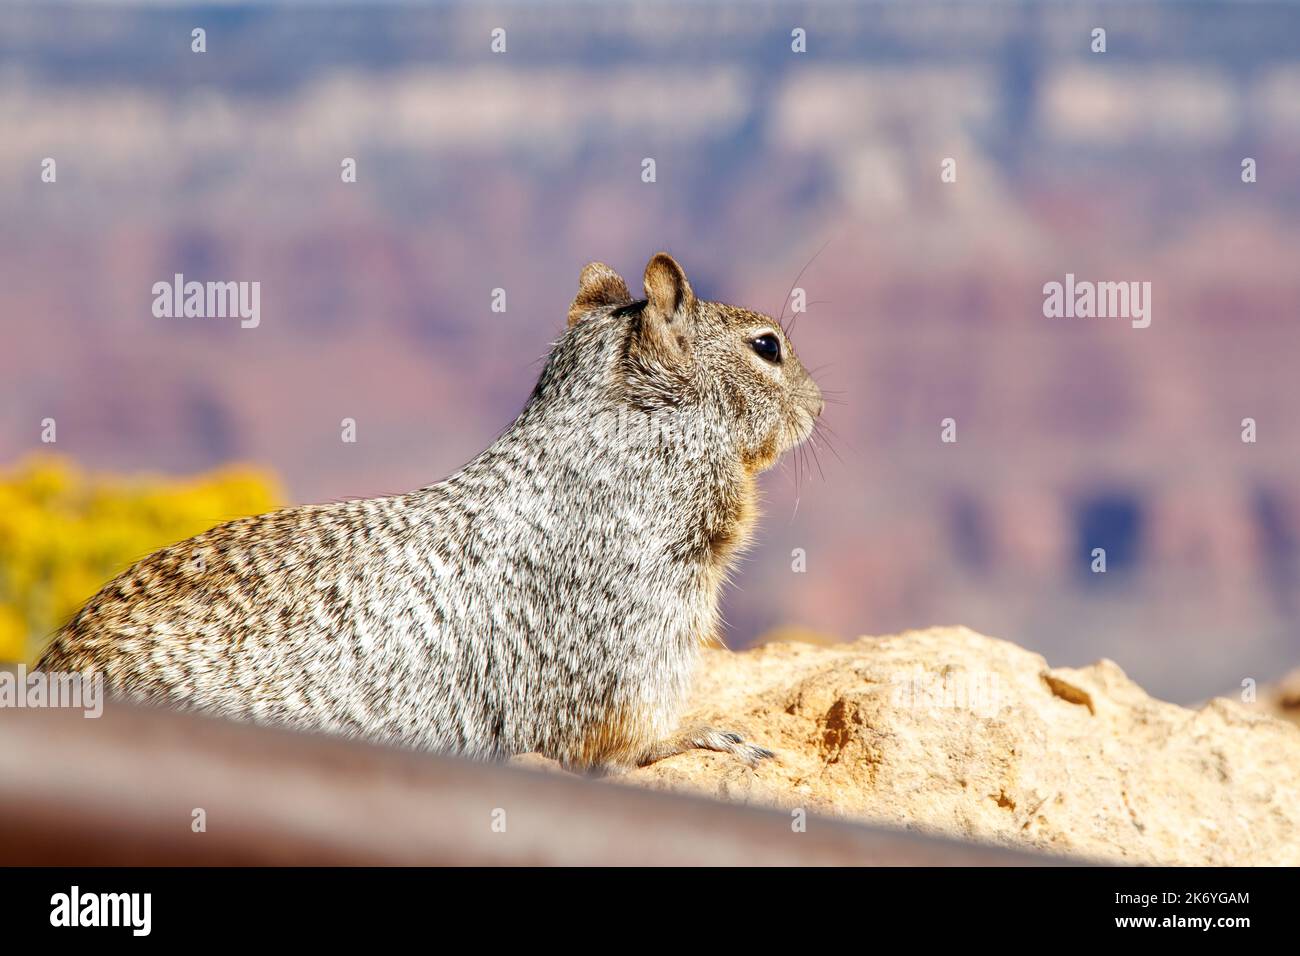 Écureuil sur le rocher dans le parc national du Grand Canyon en Arizona. Faune du Gran Canyon. Rive sud du Grand Canyon Banque D'Images